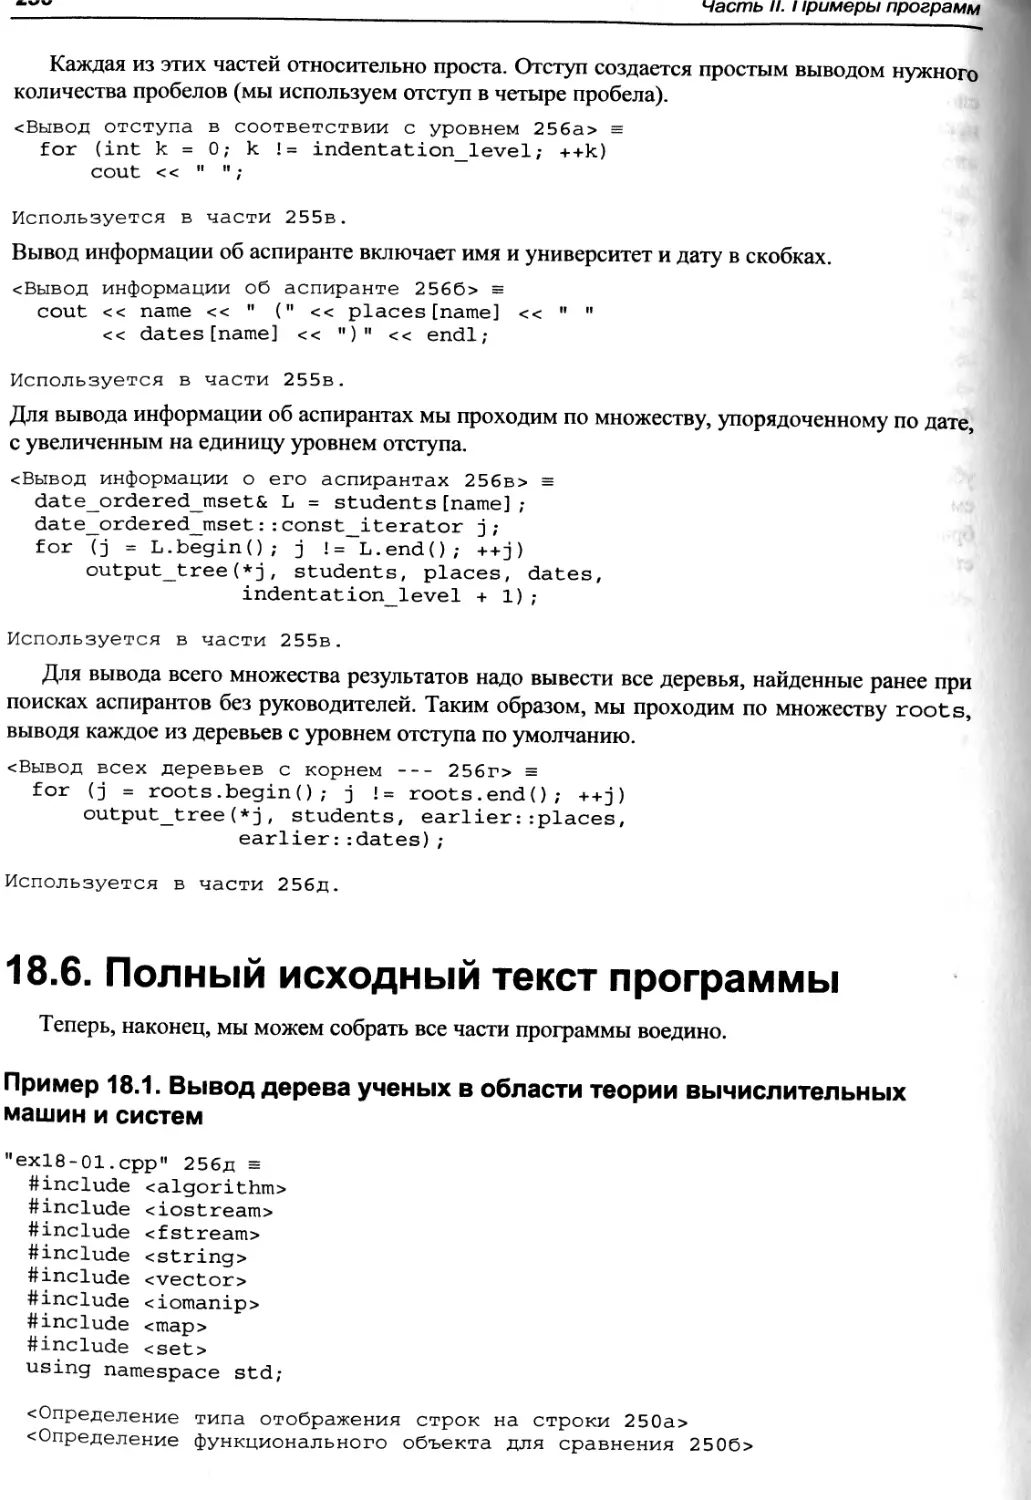 Пример 18.1. Вывод дерева ученых в области теории вычислительных машин и систем
18.6. Полный исходный текст программы